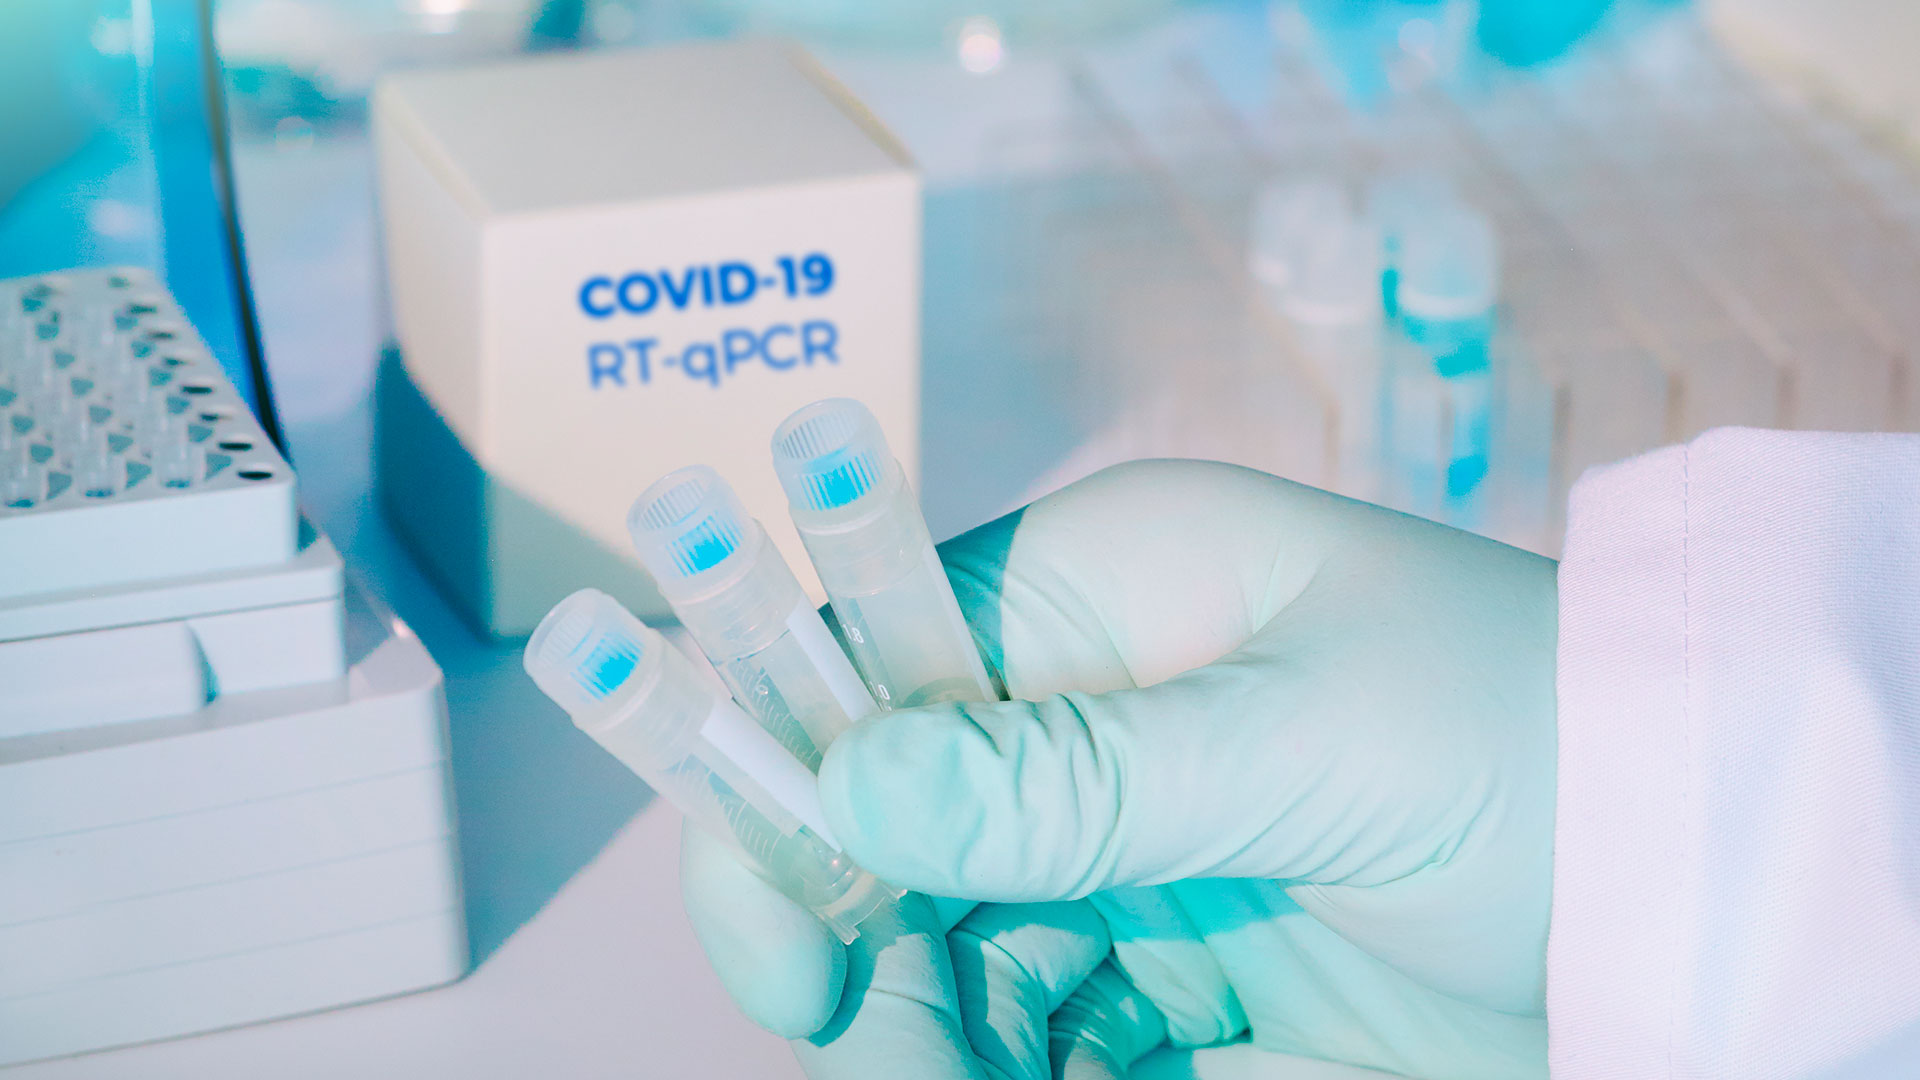 La PCR detecta un fragmento genético de un virus; no es una técnica que diagnostique COVID a pesar de que así se la haya asimilado" (Shutterstock)